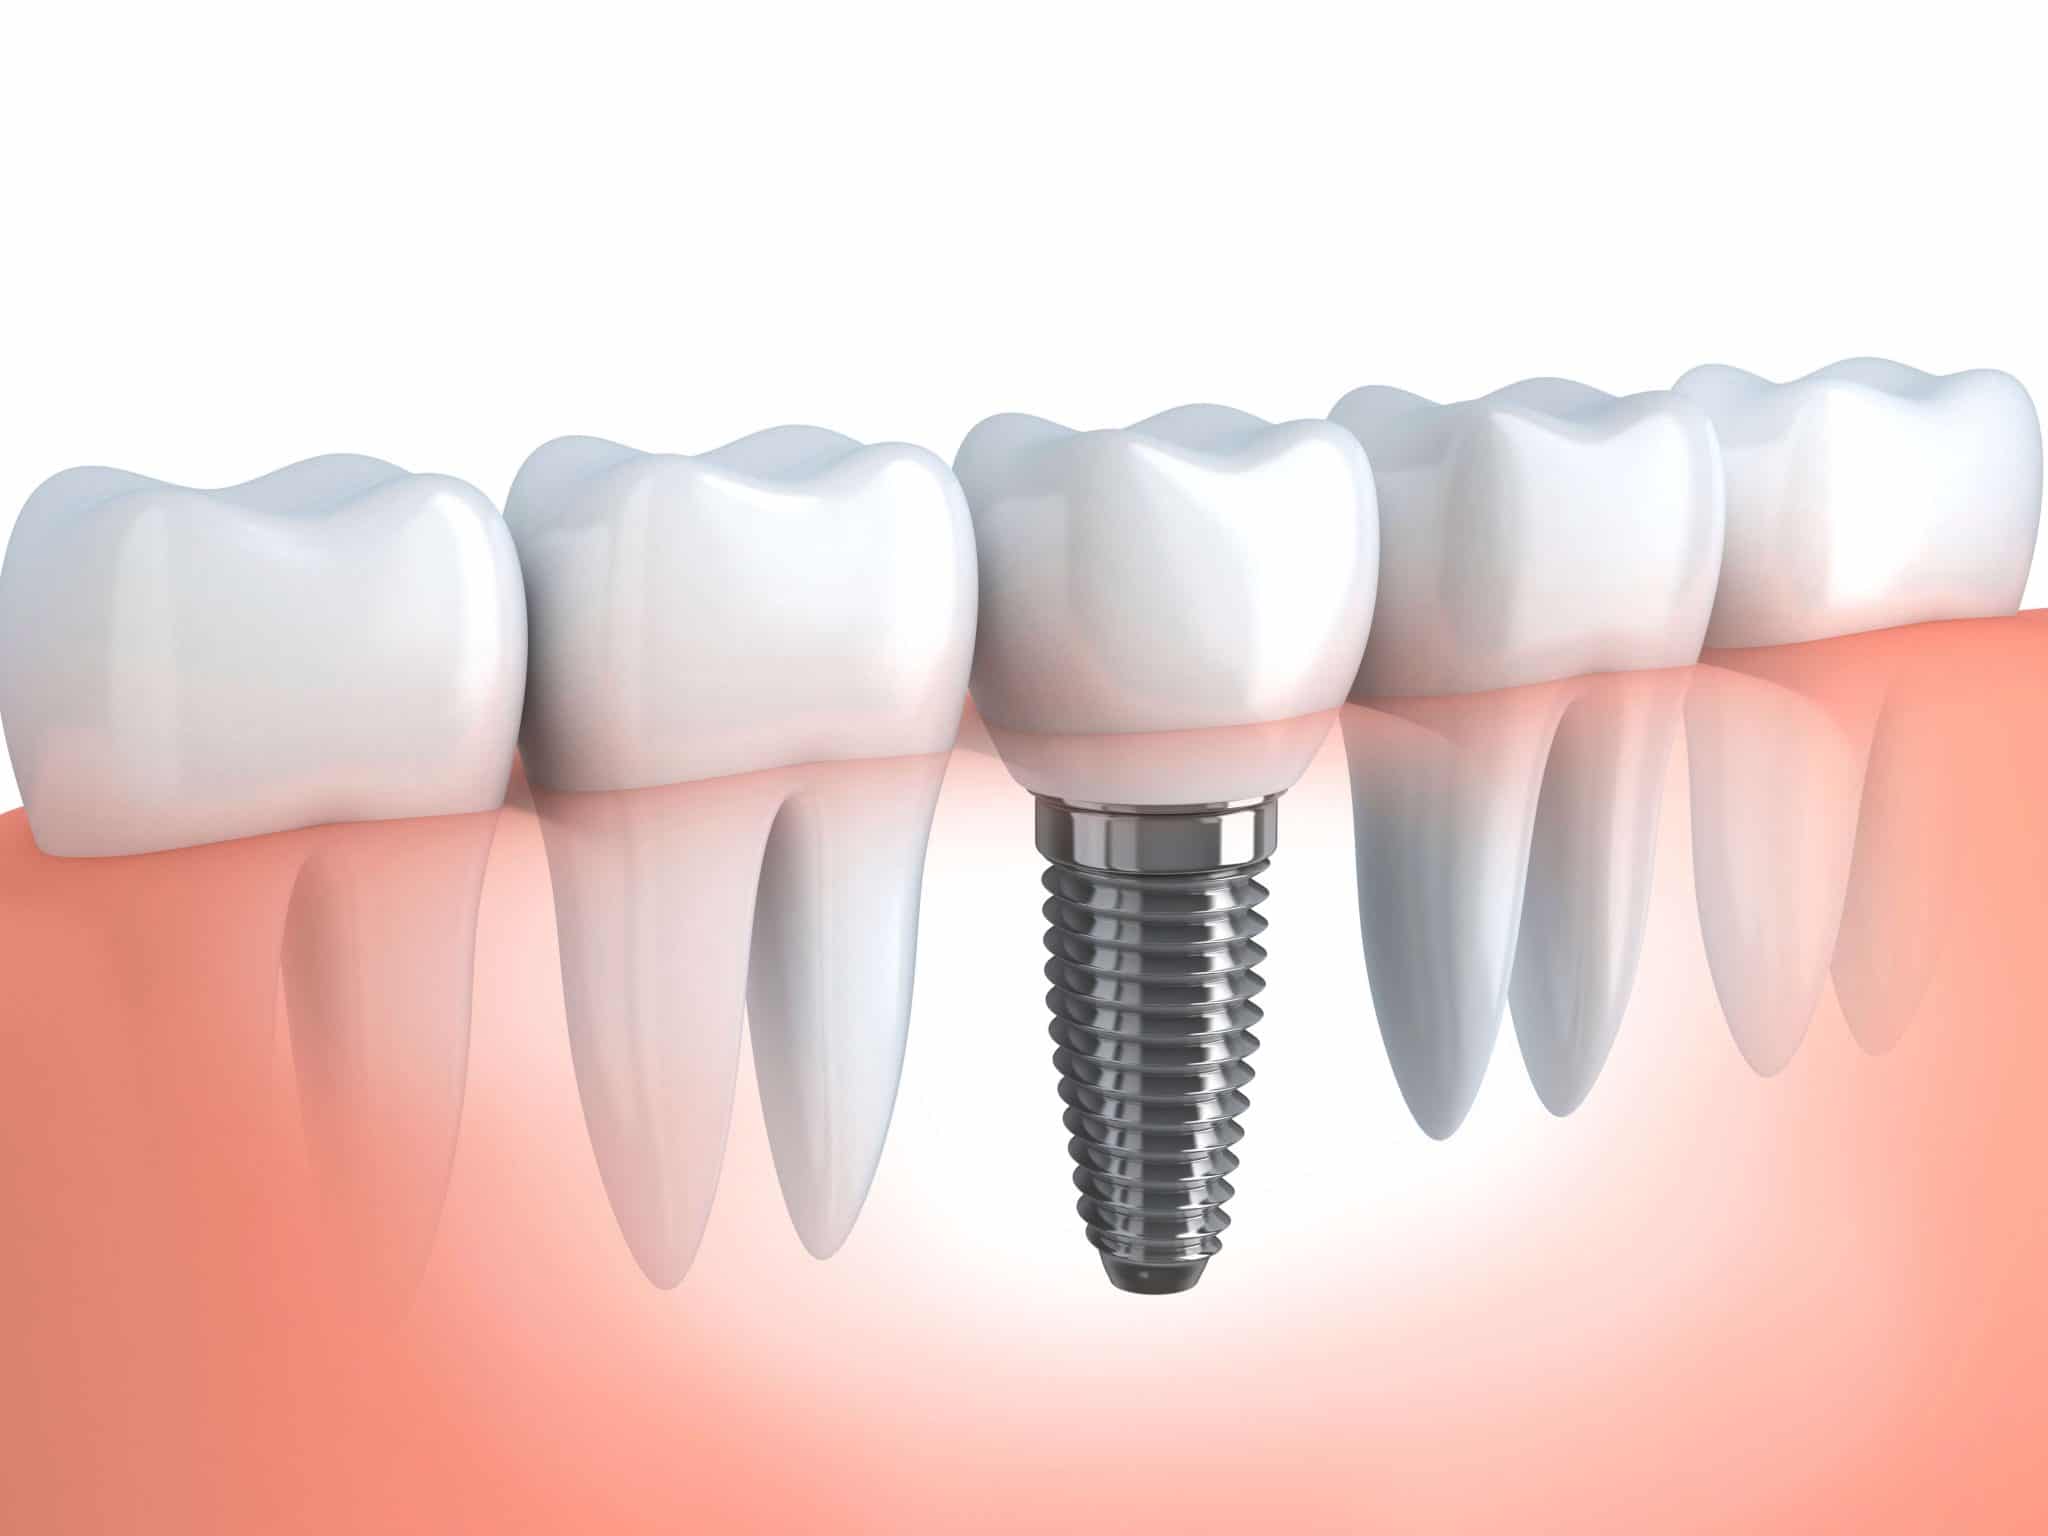 Implant dentaire : que faut-il savoir ?